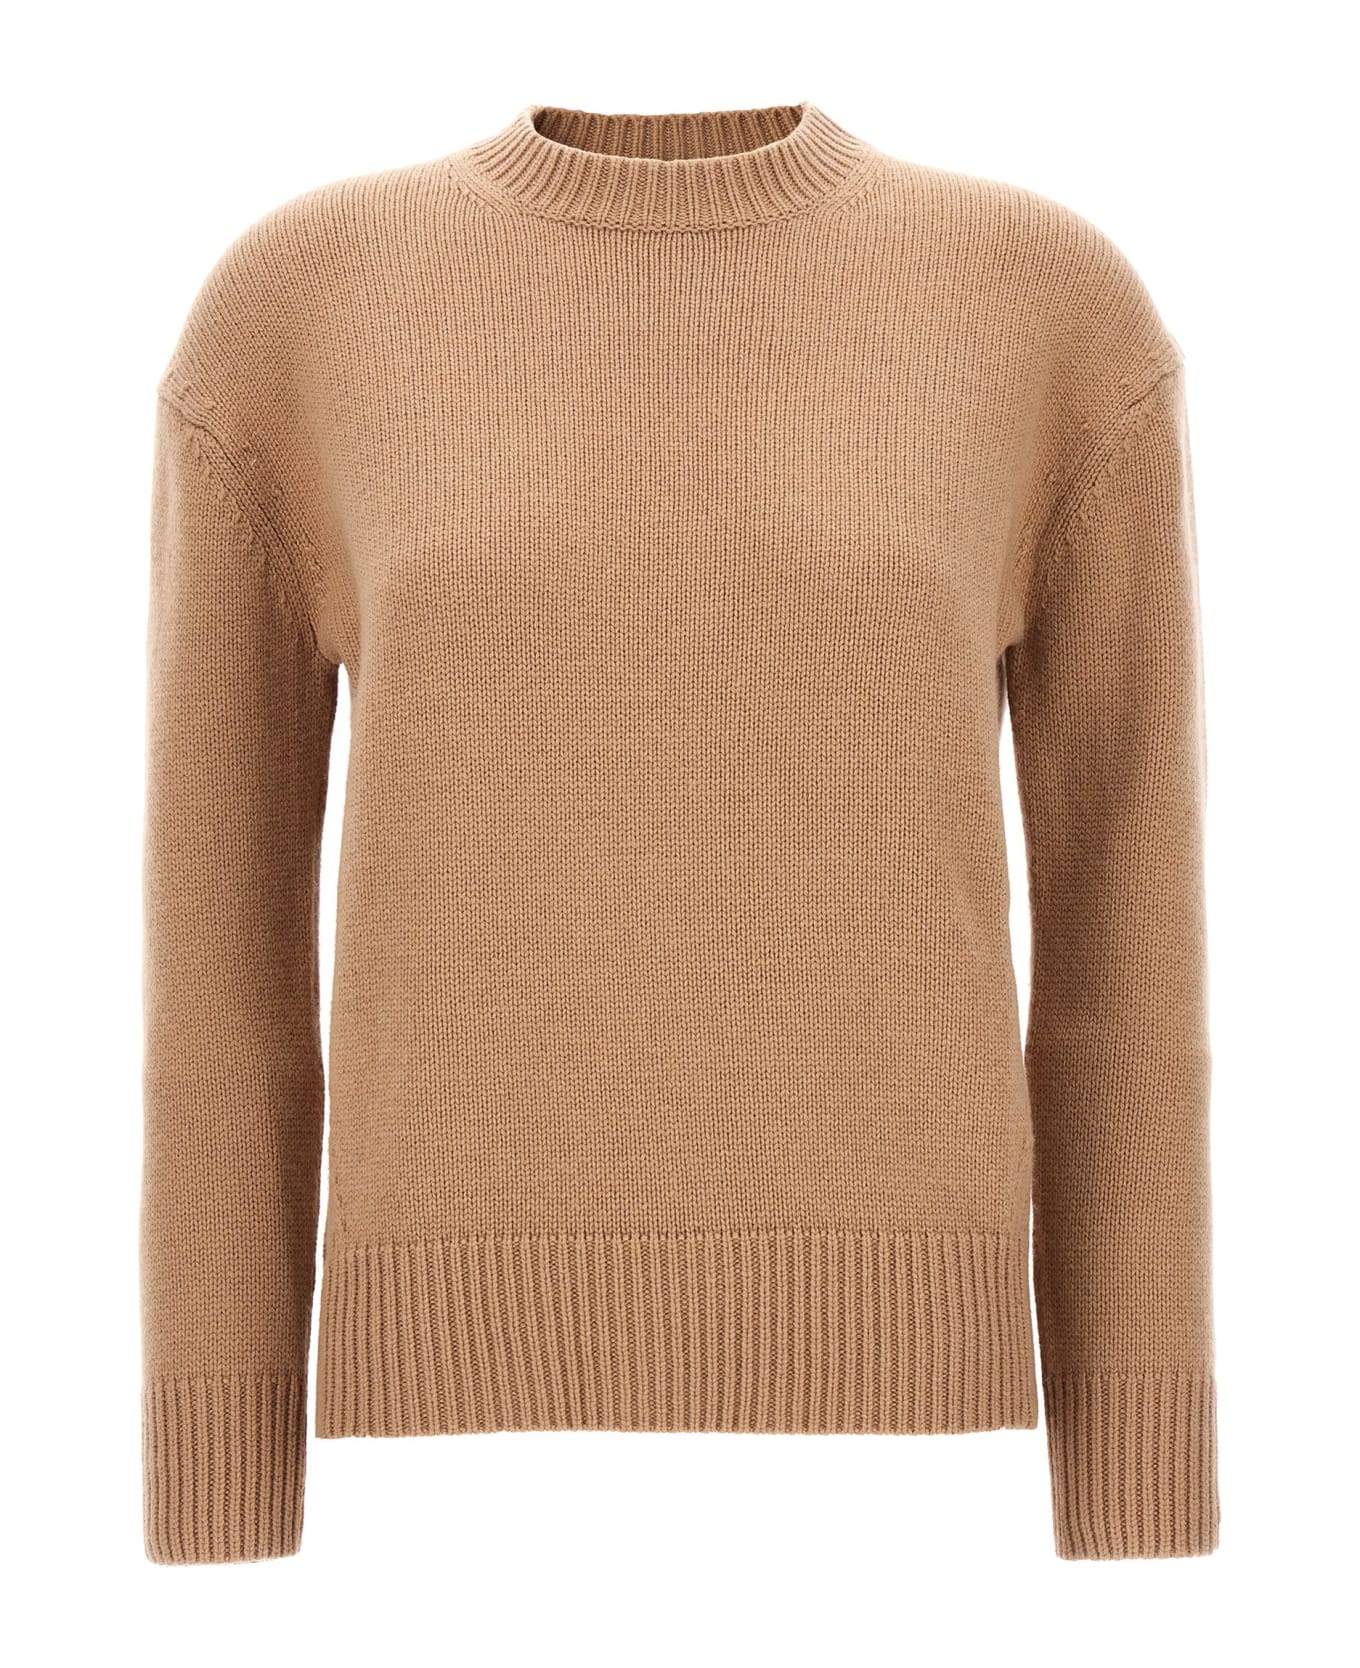 'S Max Mara 'irlanda' Sweater - Beige